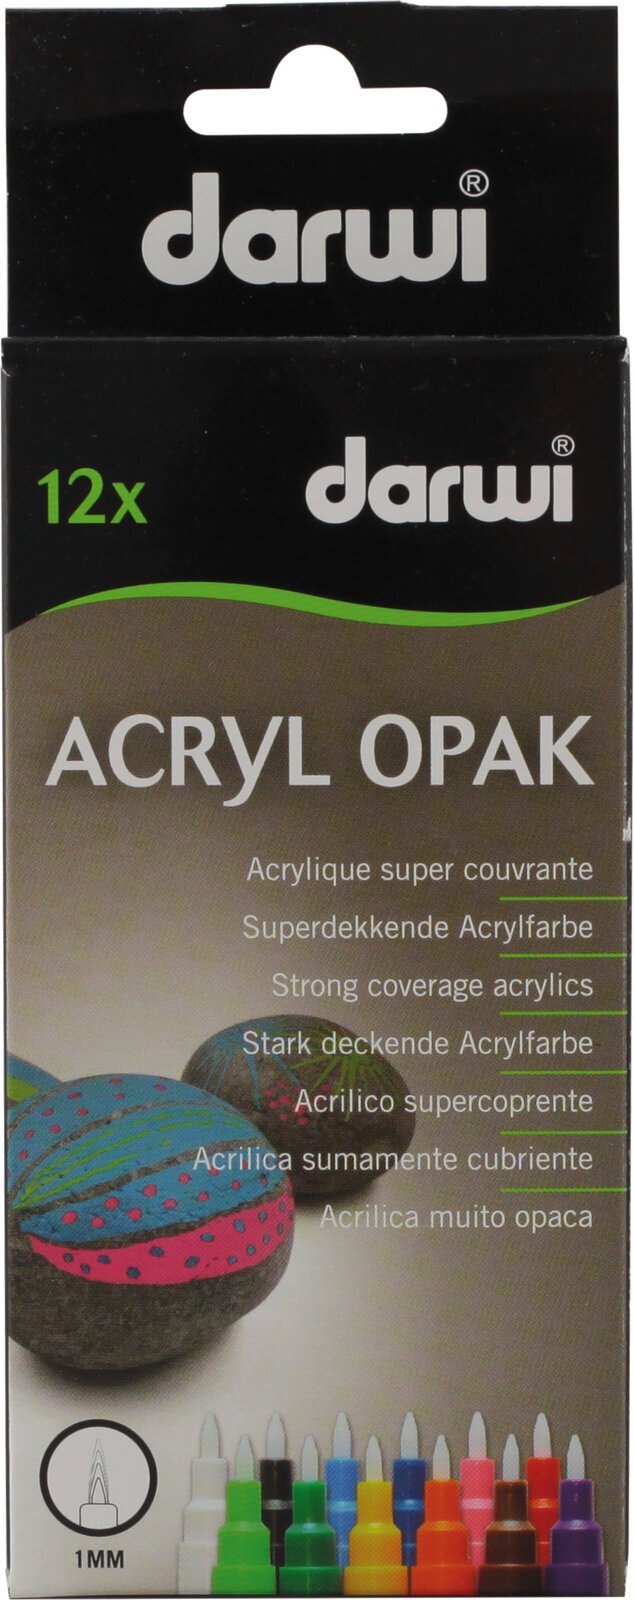 Μαρκαδοράκι Darwi Acryl Opak Marker Set Σετ ακρυλικοί μαρκαδόροι Mix 12 x 3 ml